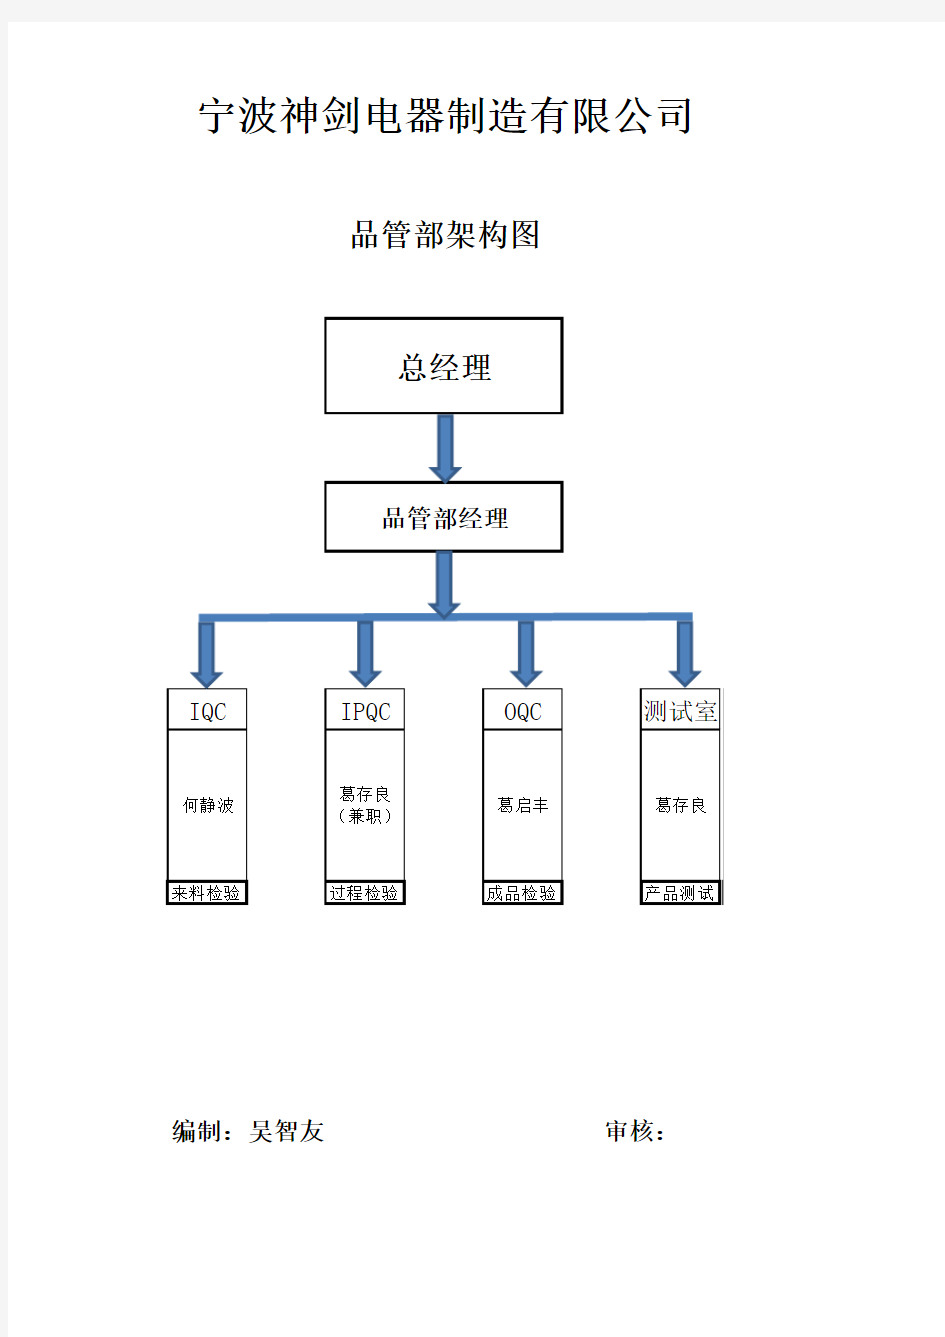 品管部组织架构图